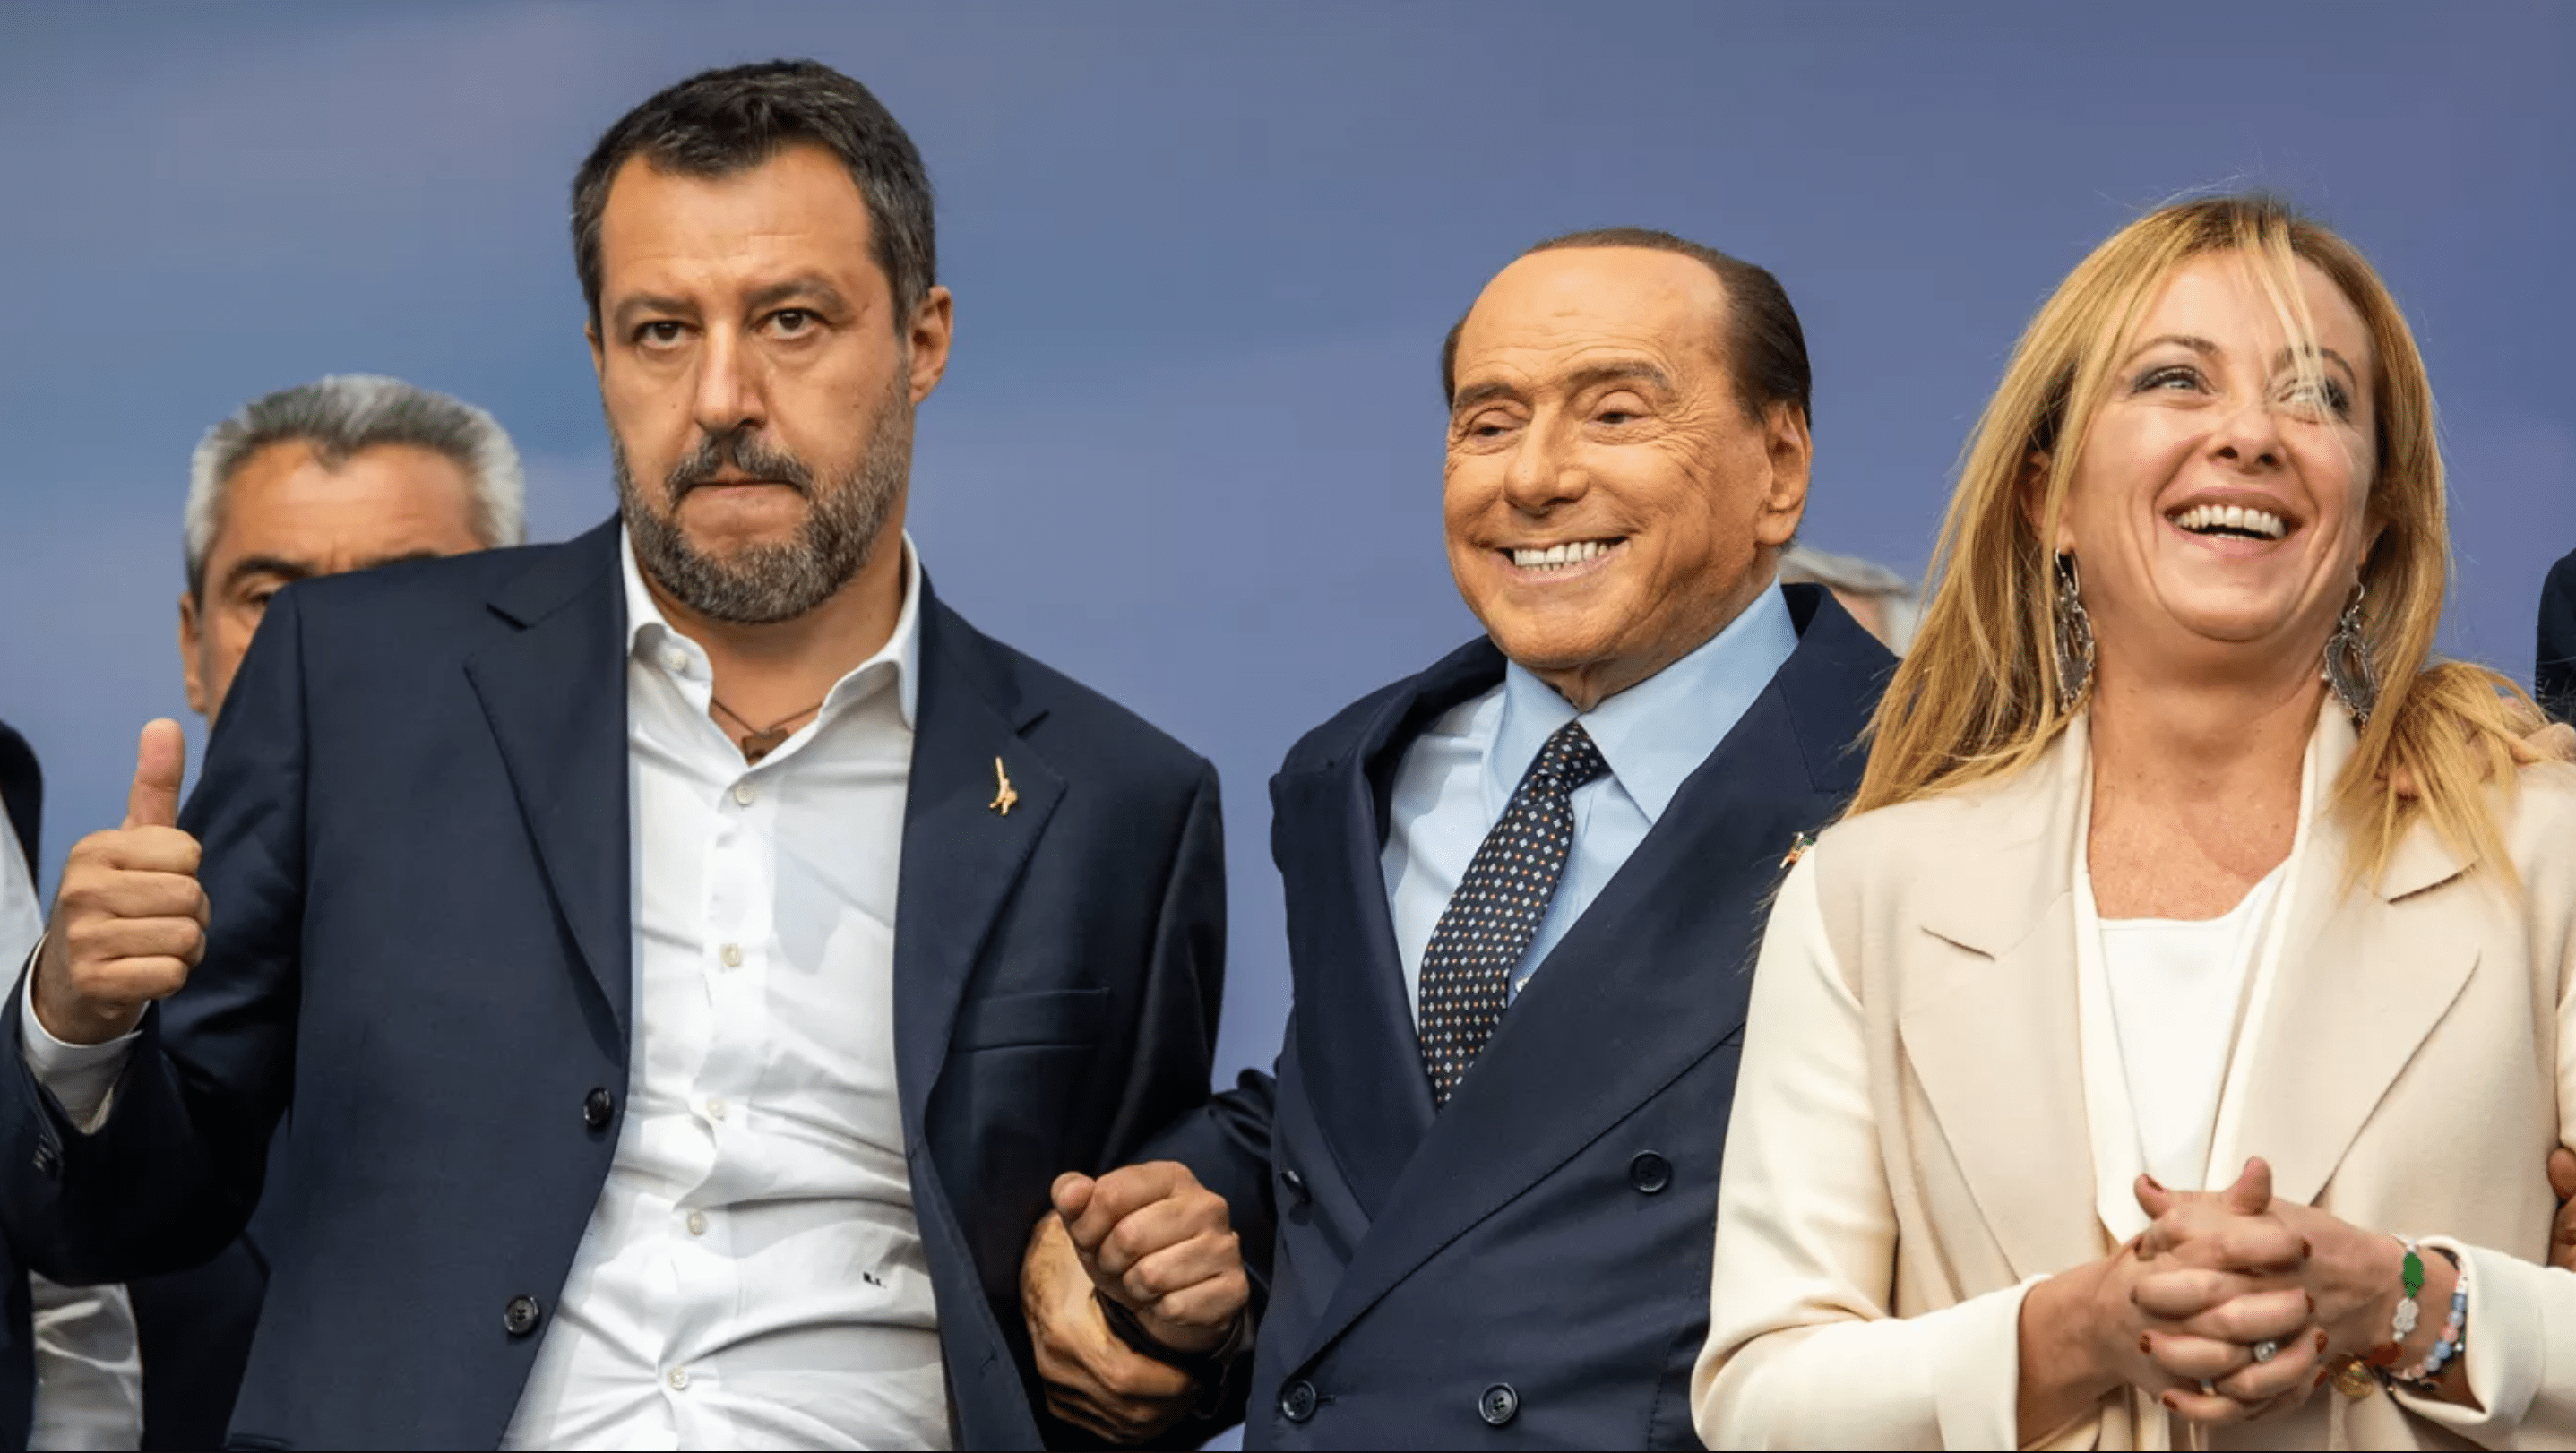  حزب راست افراطی برادران ایتالیا به رهبری جورجیا ملونی در آستانه یک پیروزی بزرگ در انتخابات روز یکشنبه است